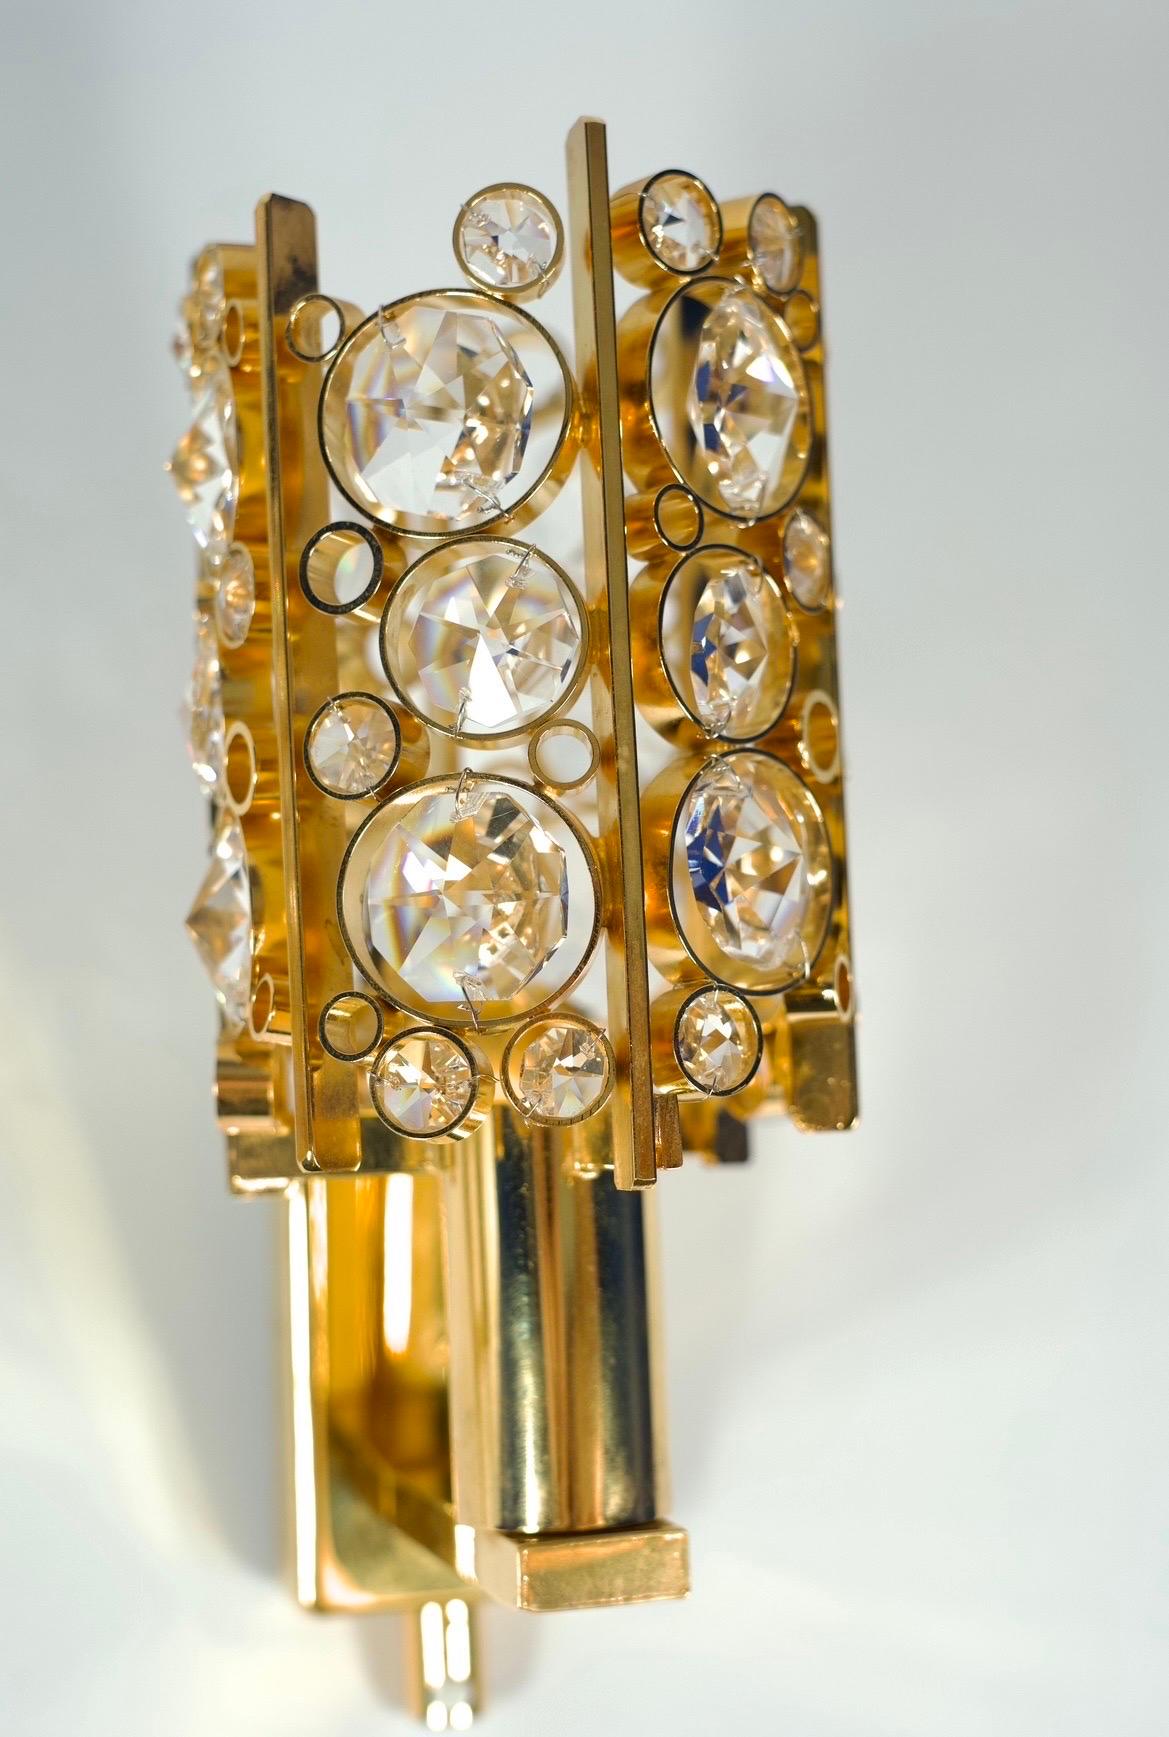 Paire d'appliques Palwa en cristal taillé sur une monture plaquée or, Vienne, 1960.
Elégante paire d'appliques en plaqué or très détaillées avec une seule douille de candélabre par Palwa Vienne, Autriche, 1960.
Palwa a utilisé des cristaux de la